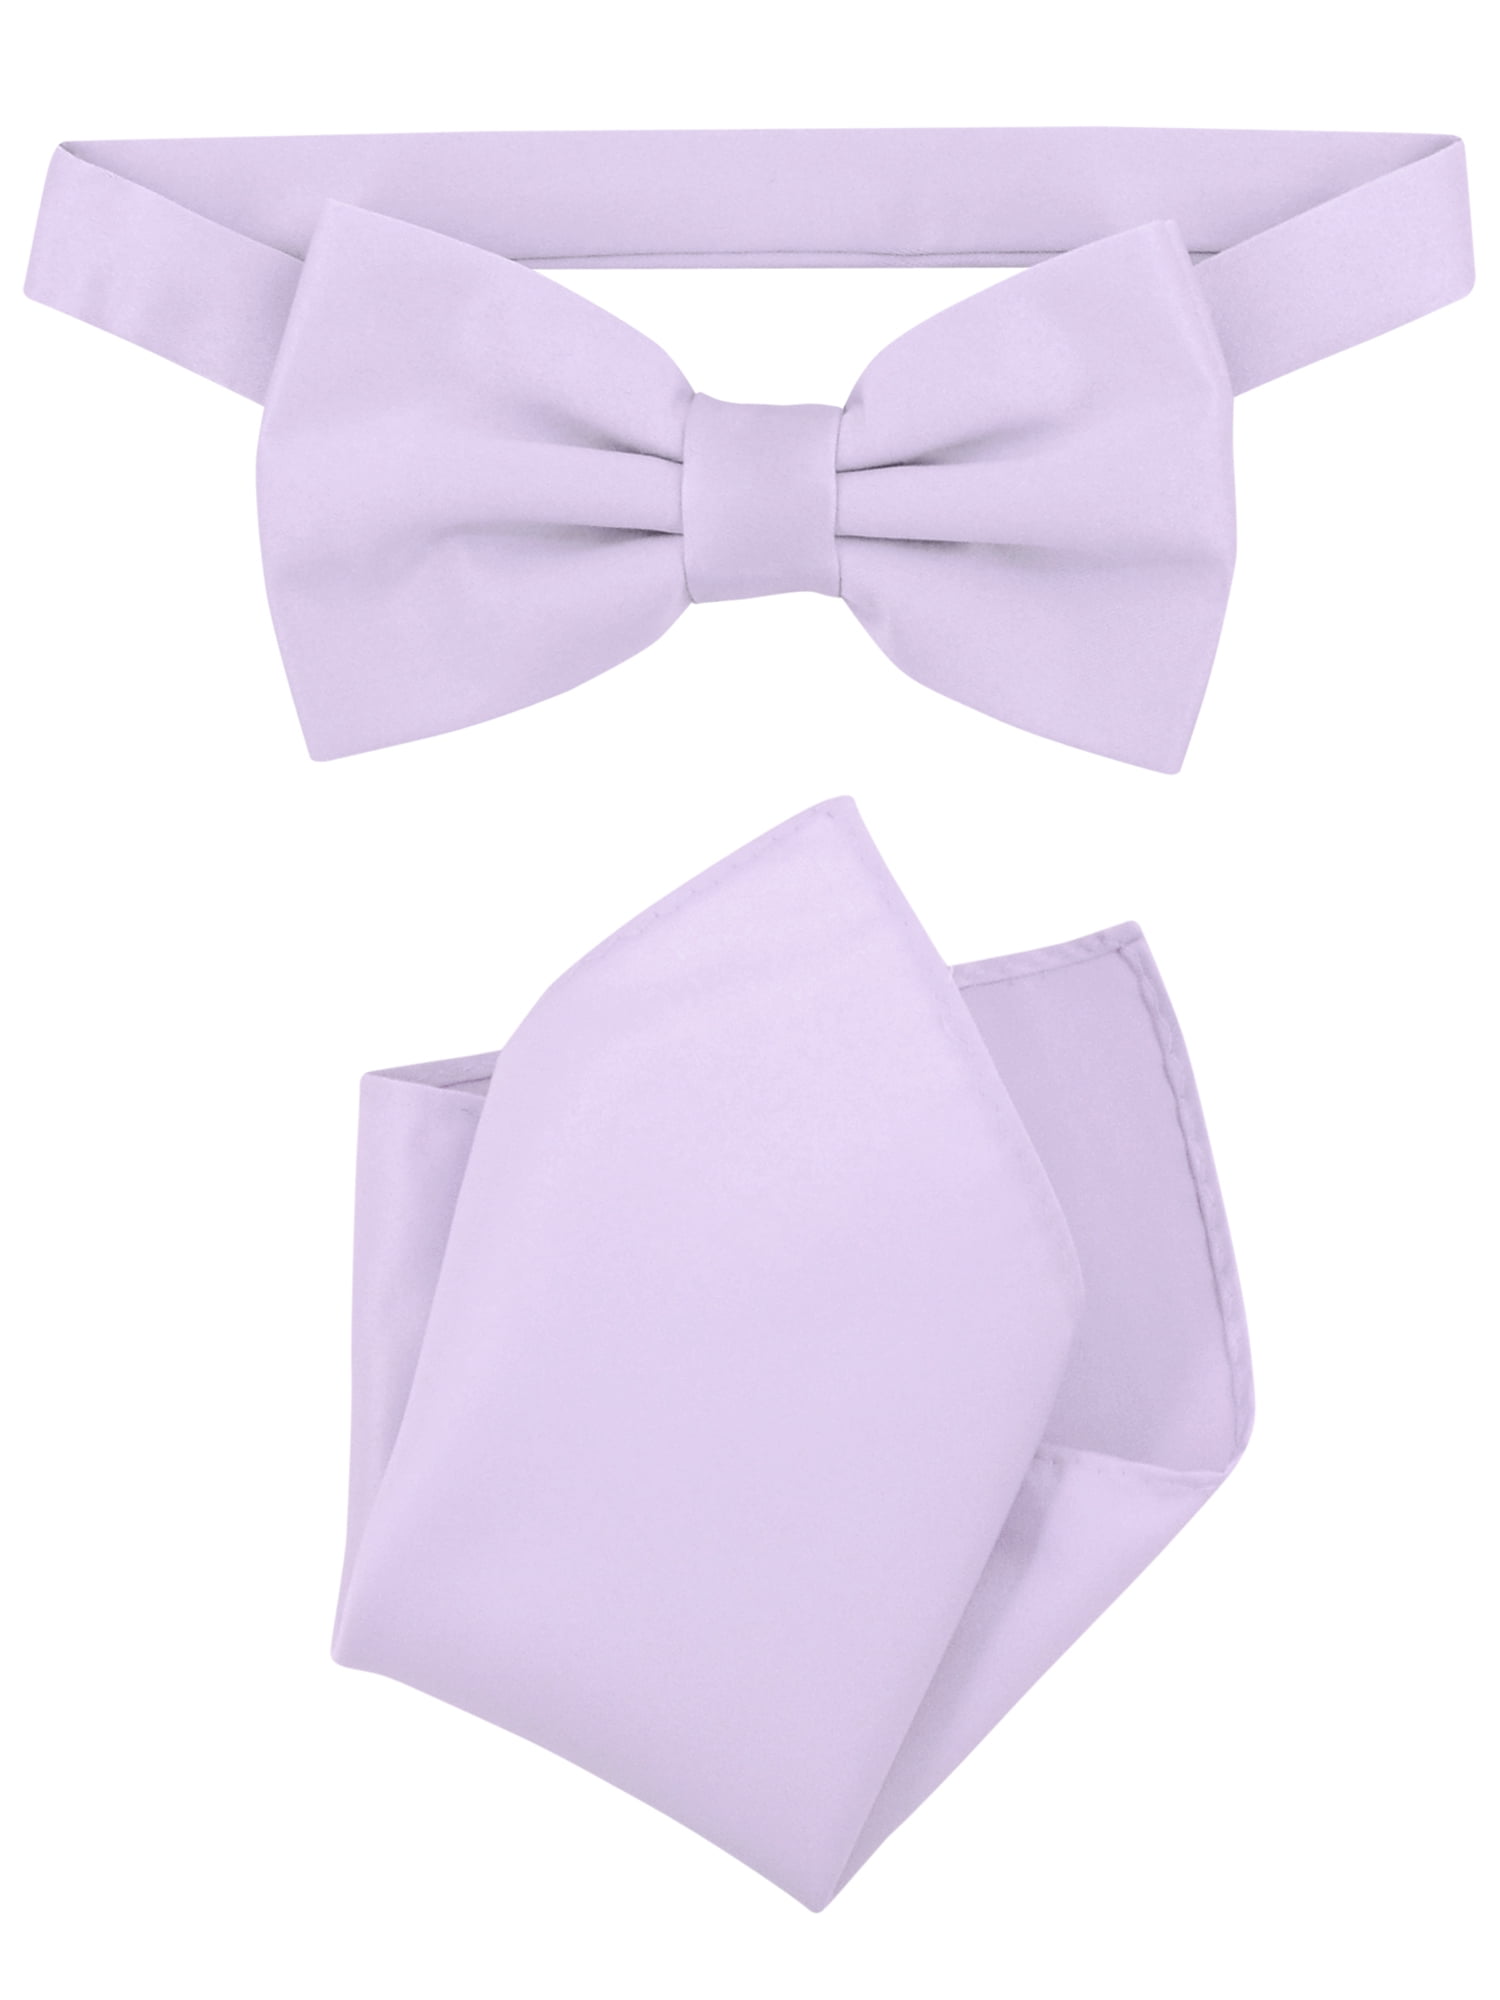 New in box Vesuvio Napoli men's self tie bow tie 100% silk formal party purple 